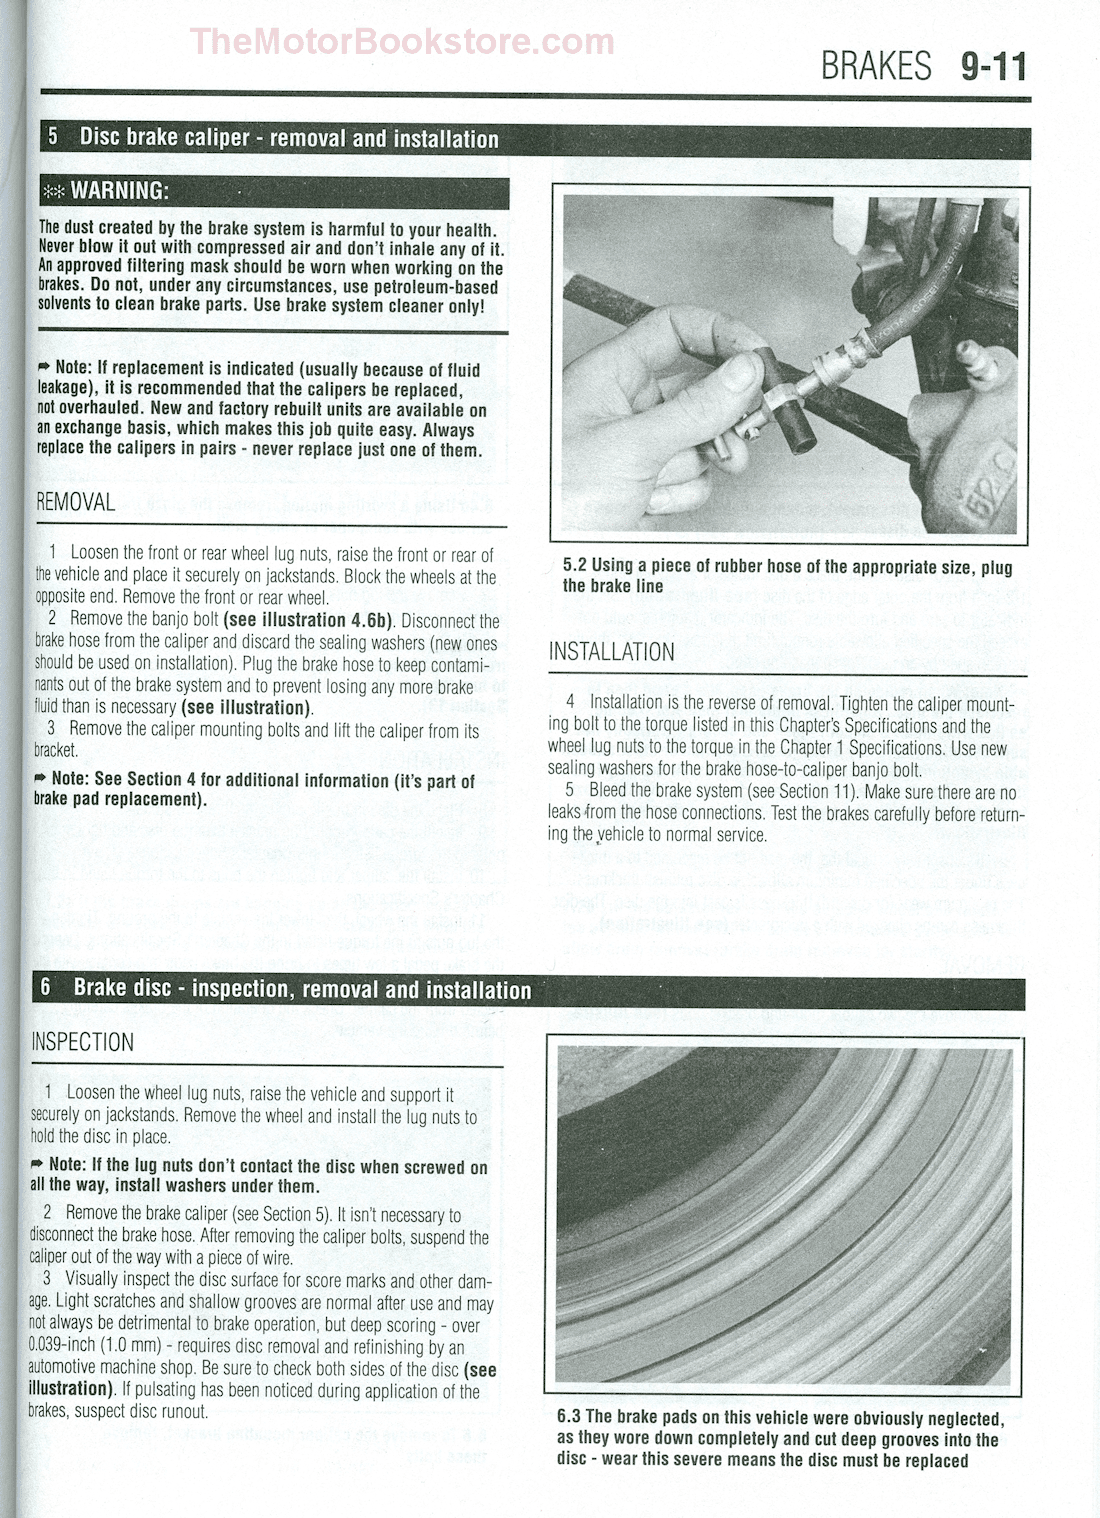 Haynes repair manual nissan sentra 2007 #7